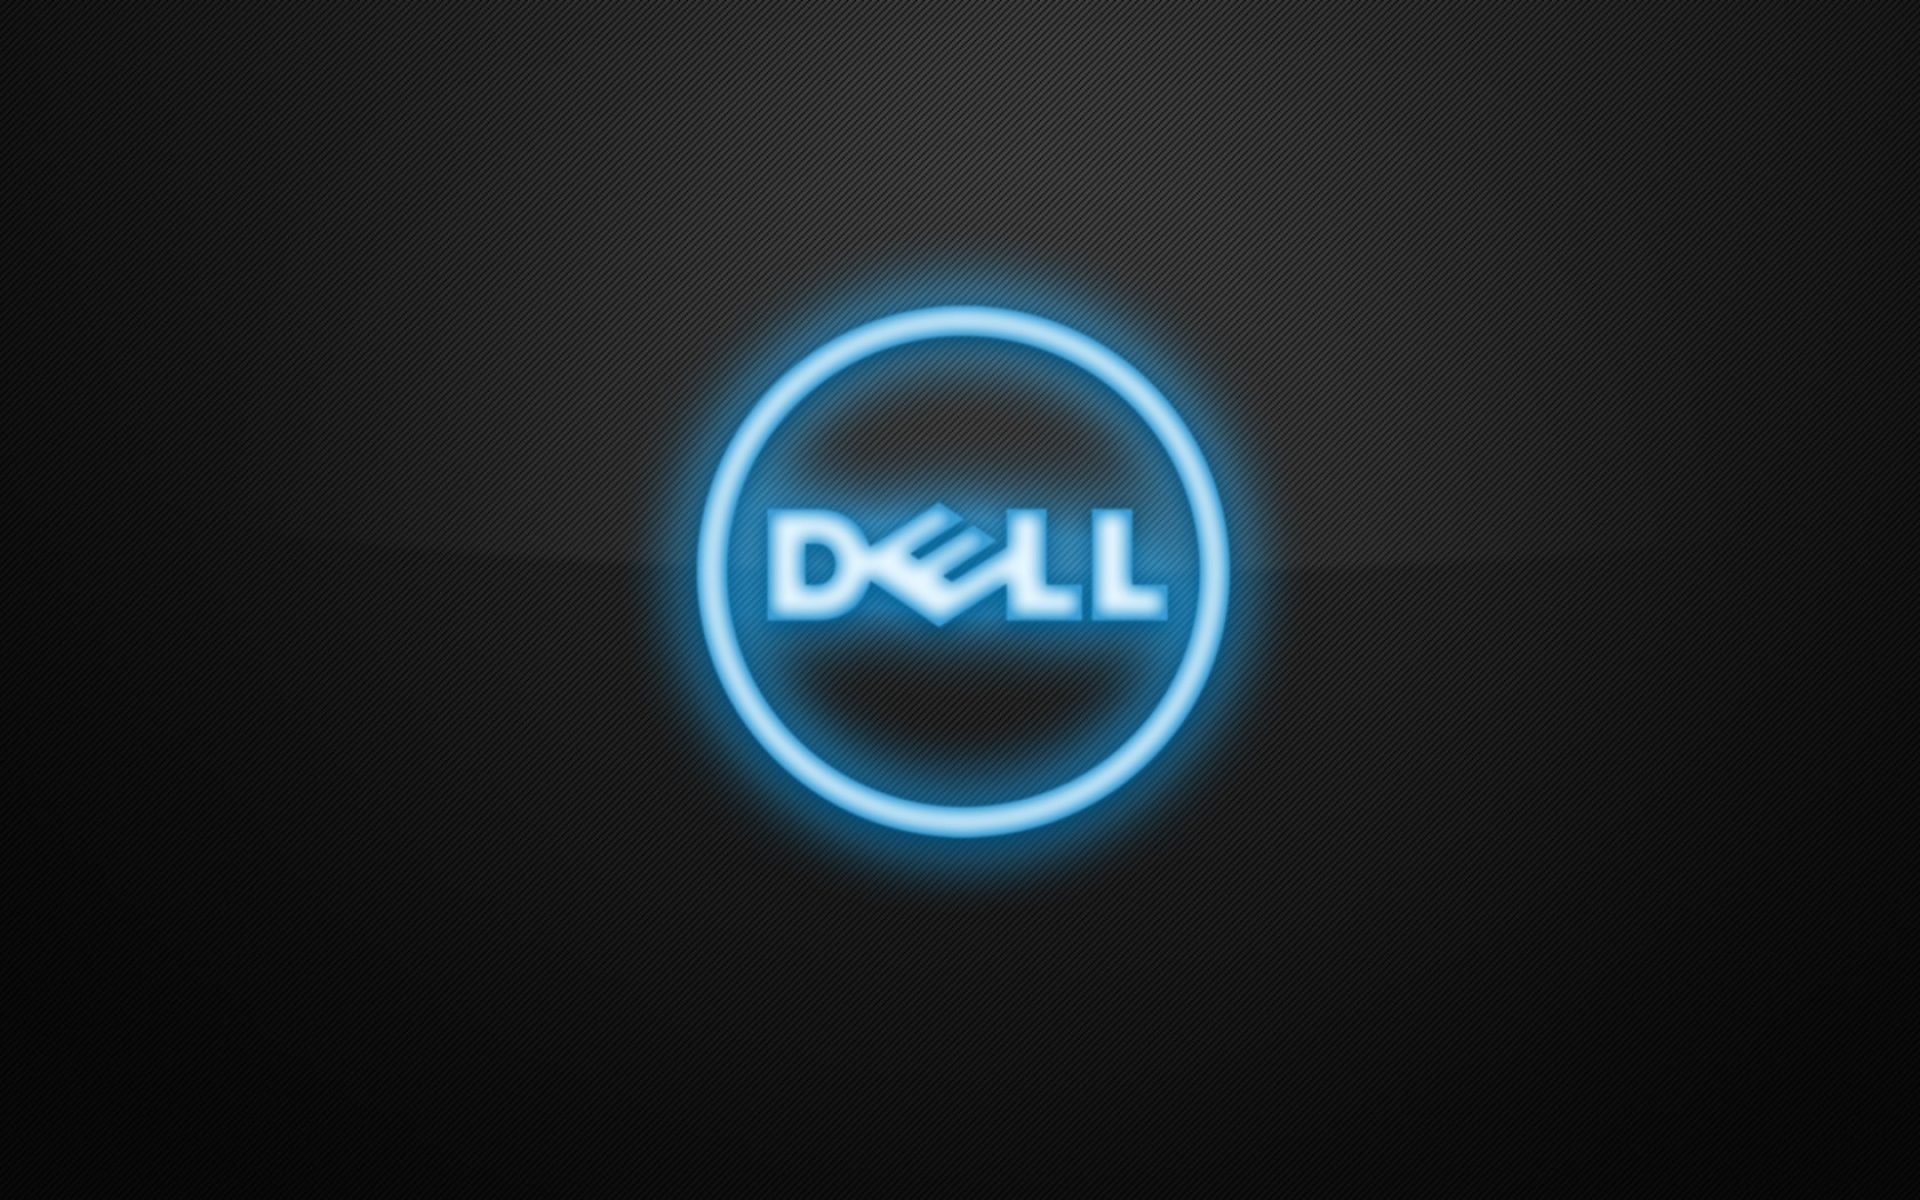 Картинки Dell, логотип, бренд фото и обои на рабочий стол